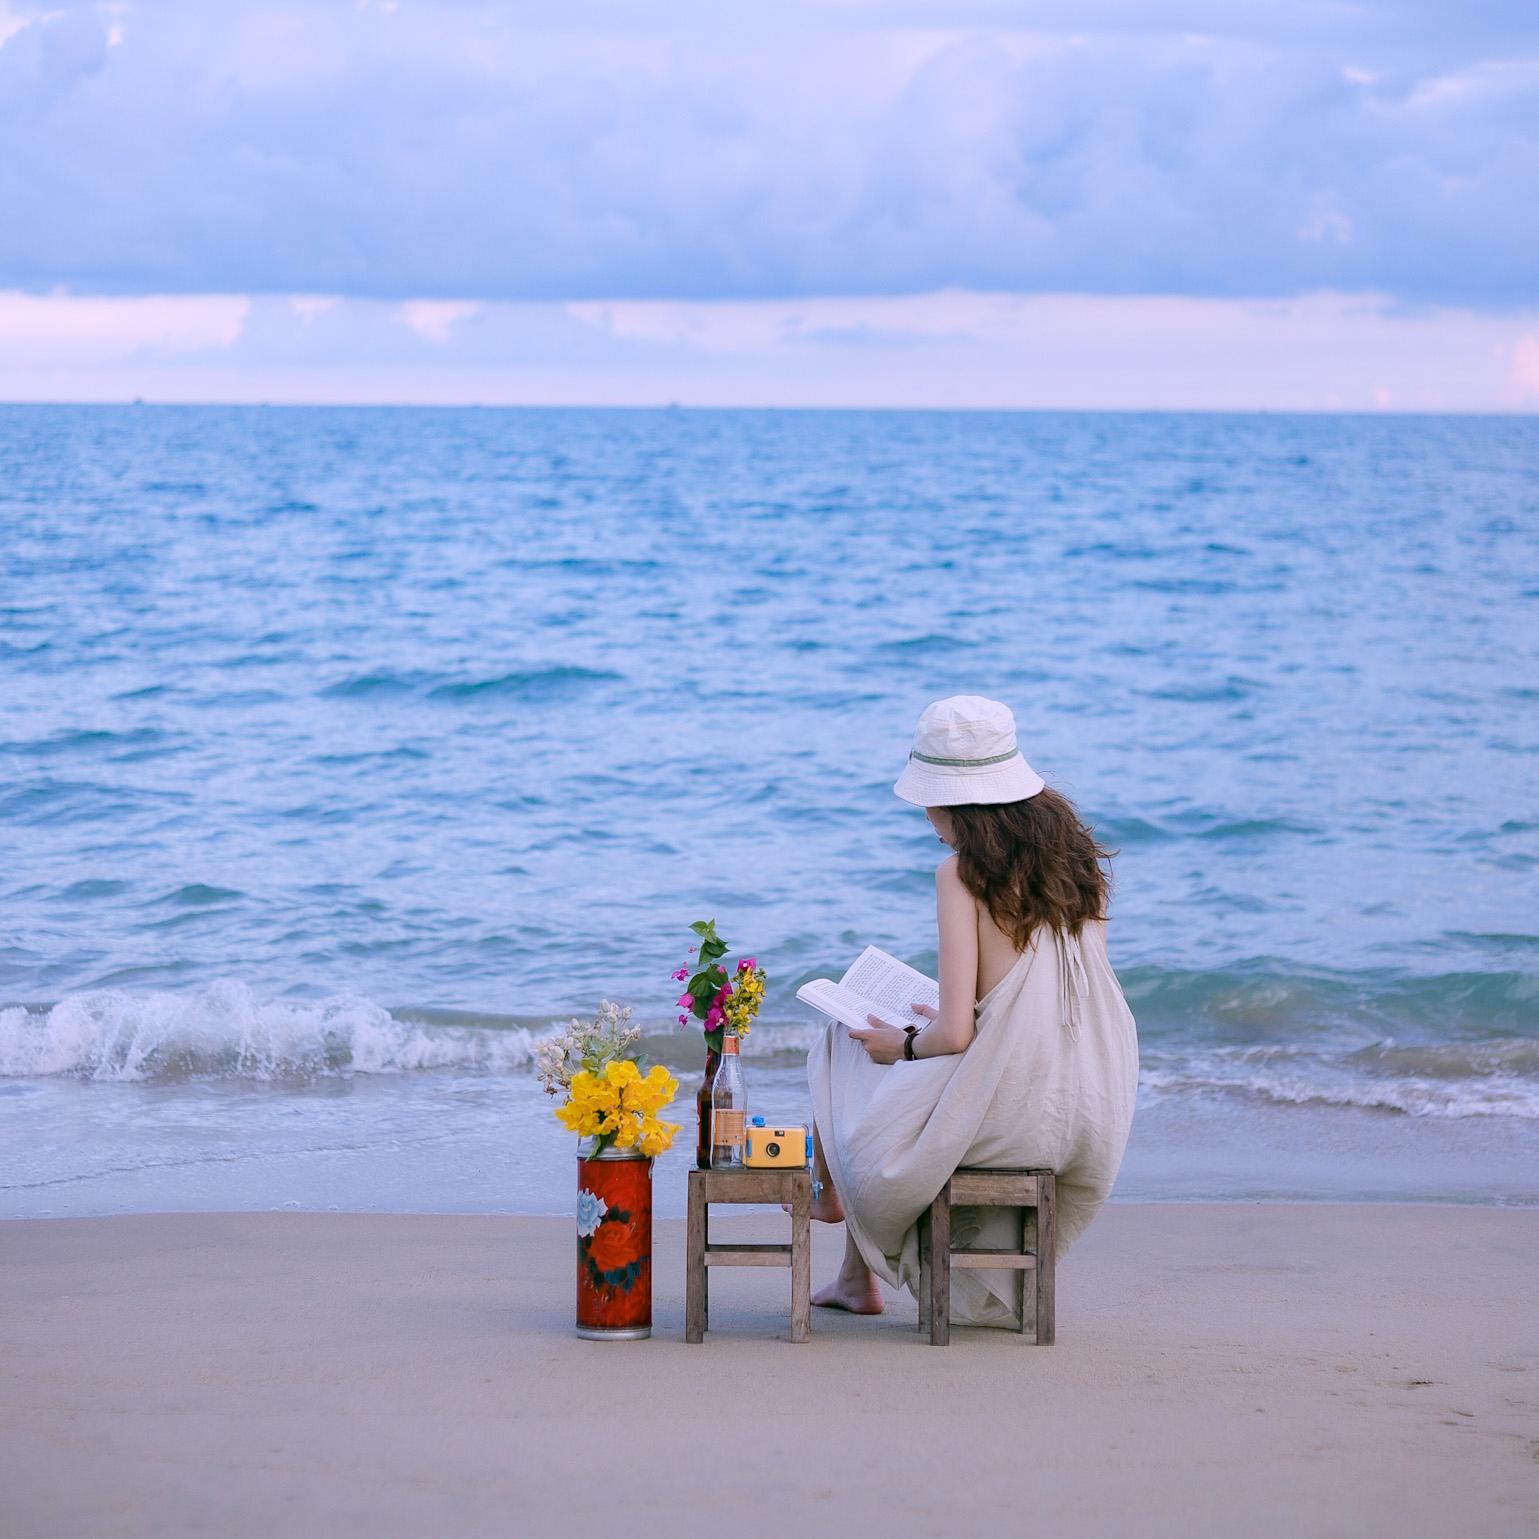 Đến 'Địa Trung Hải' của Việt Nam, ngắm biển xanh cát trắng và làng chài đẹp mê hồn - 8